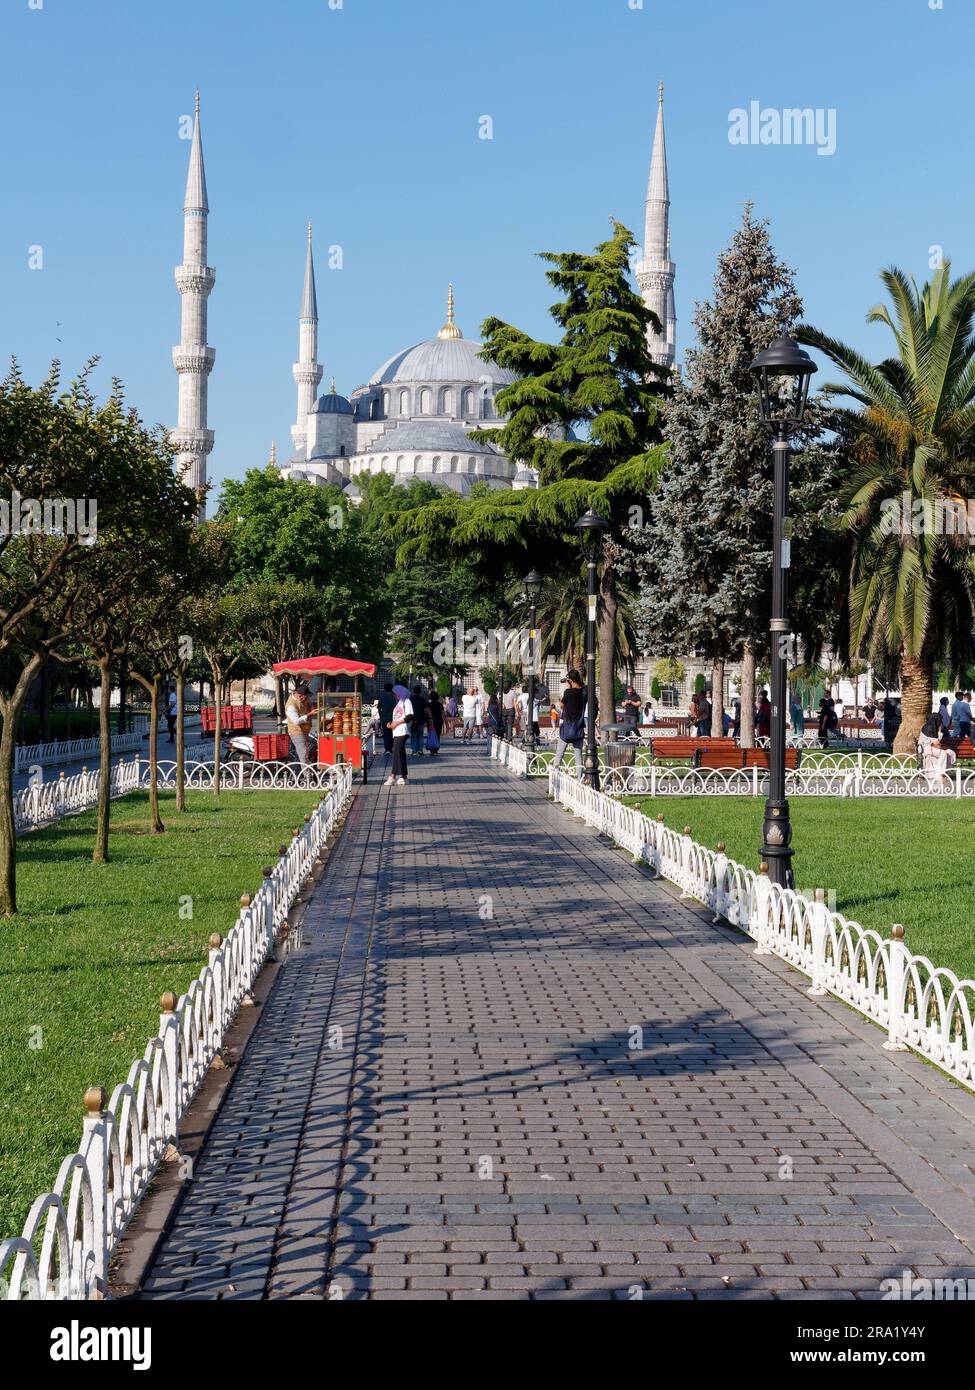 Jardins et charrette rouge vendant Simits aka bagels turcs avec la mosquée bleue du Sultan Ahmed aka derrière, quartier Sultanahmet, Istanbul, Turquie Banque D'Images